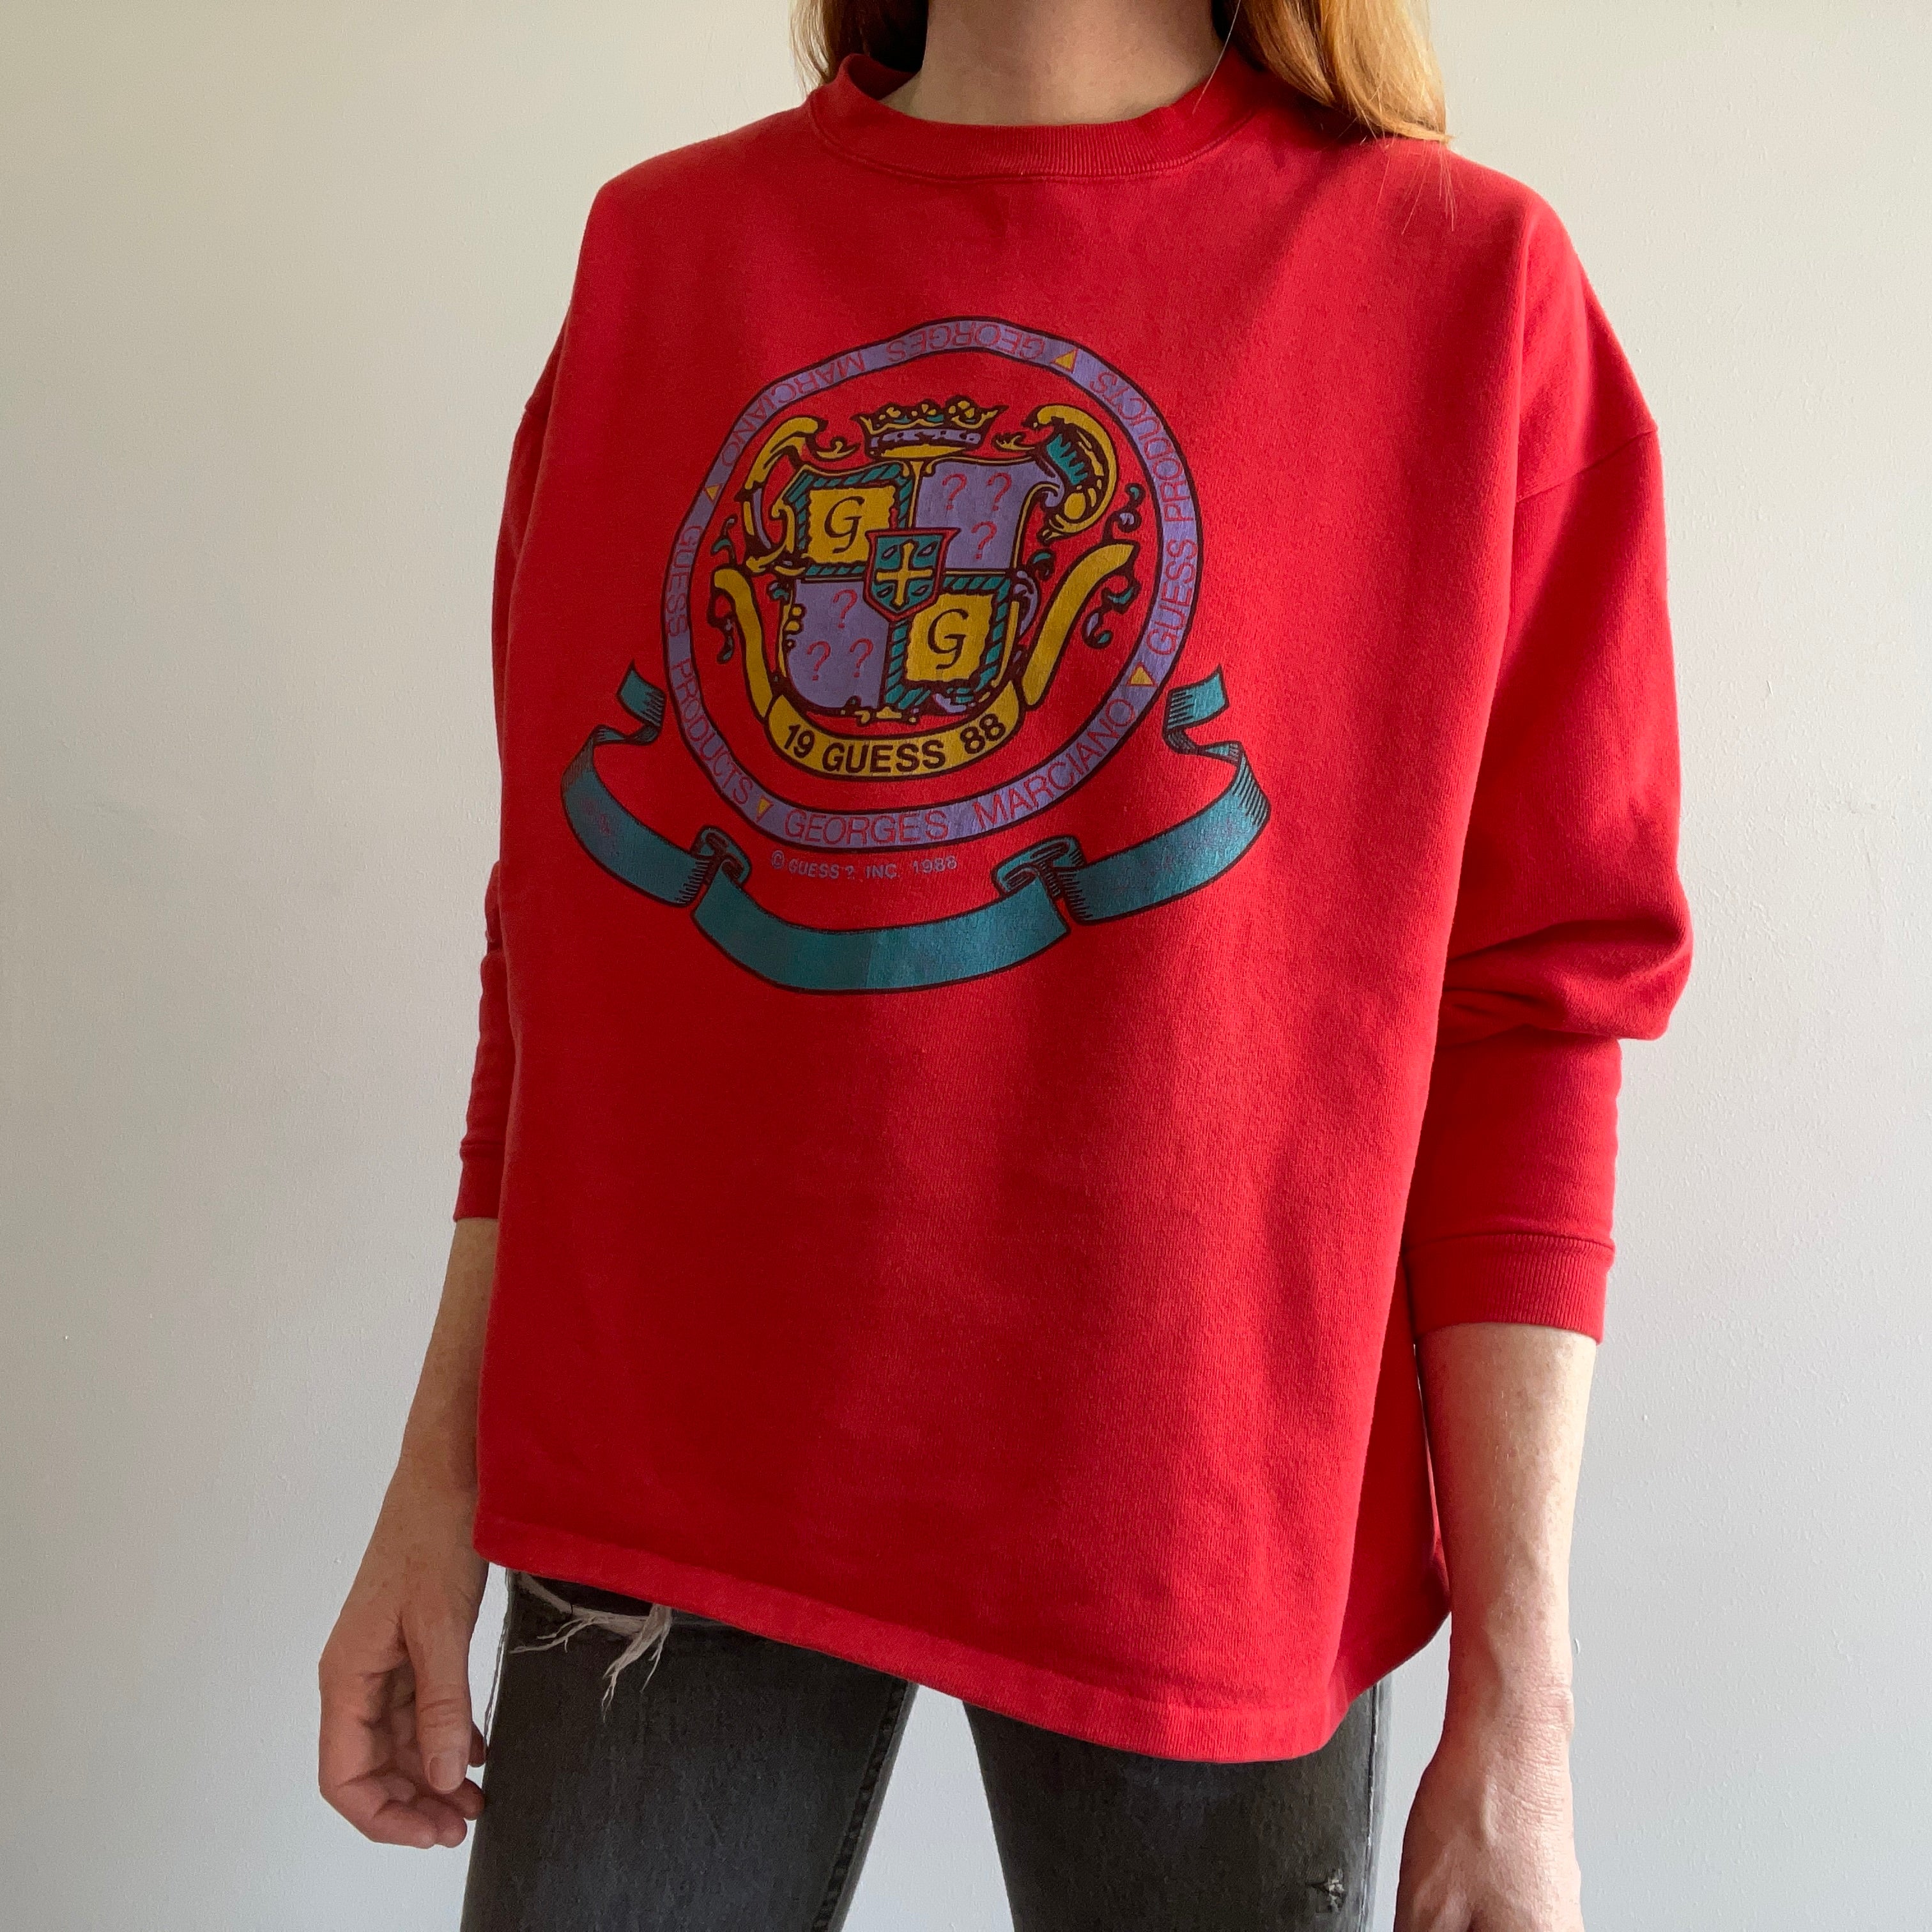 1988 Guess Sweatshirt - L'OG !!